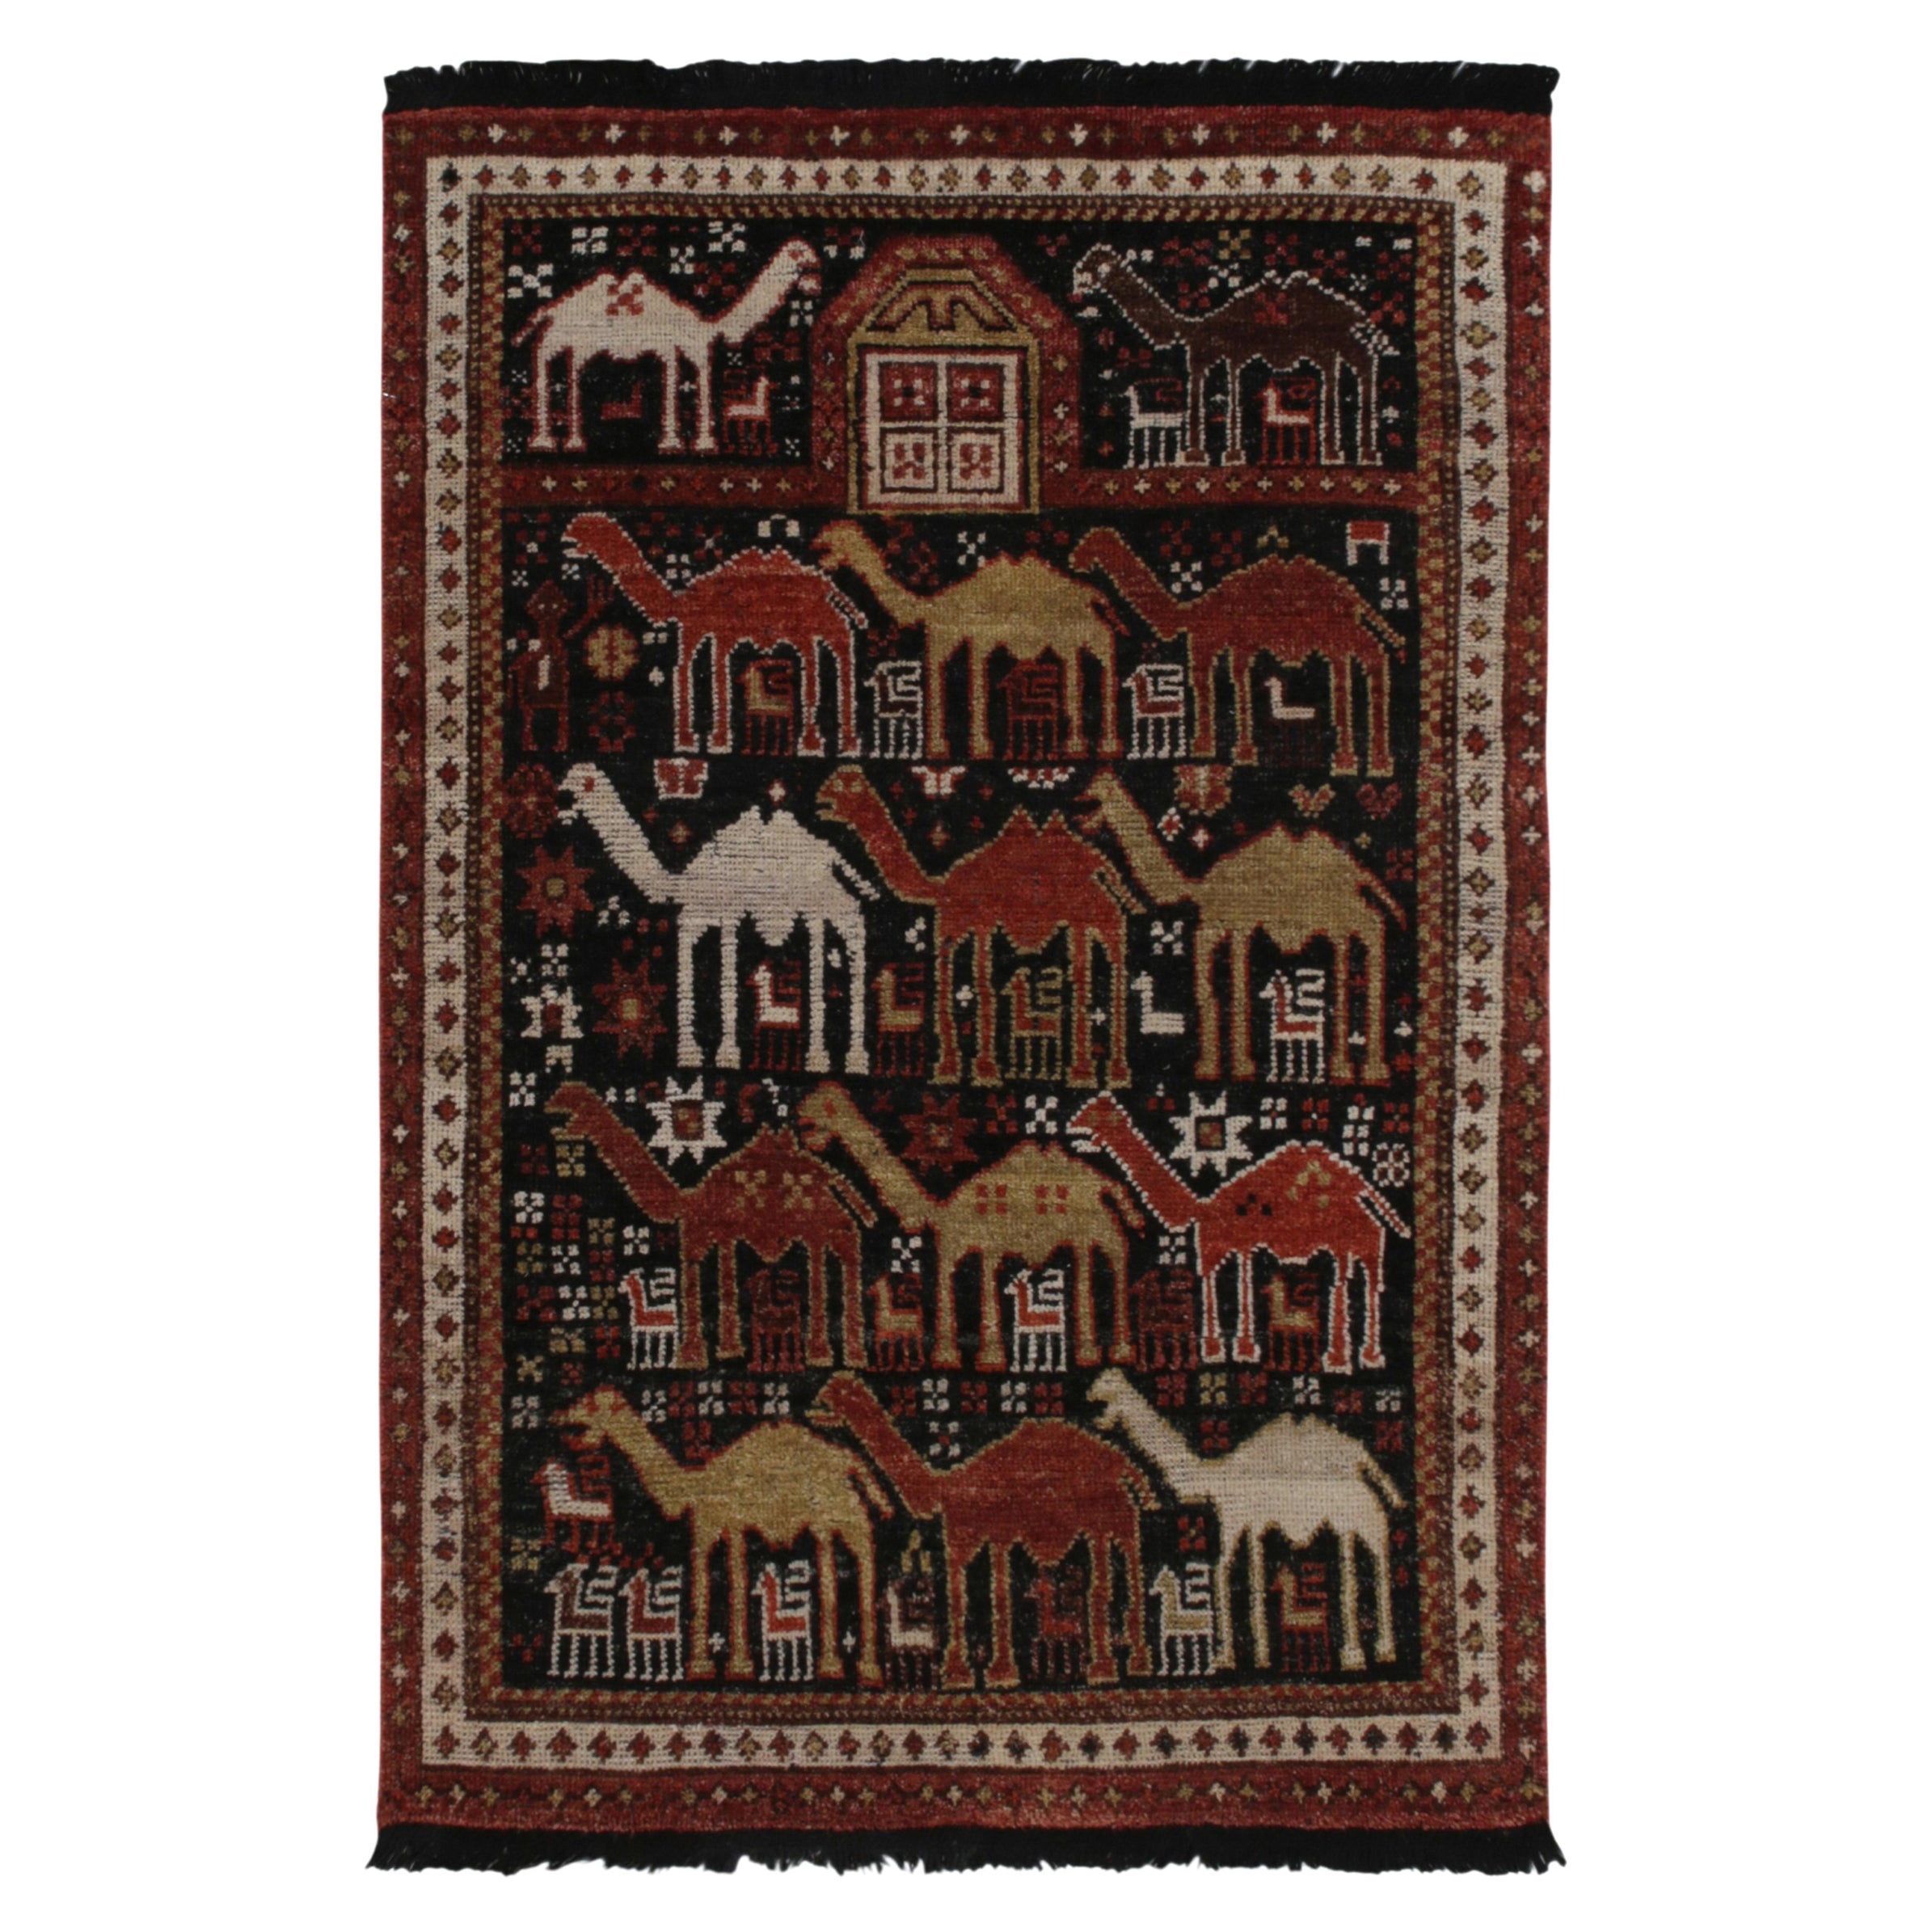 Rug & Kilim's Shirvan Tribal Style Rug in Red, Orange & Brown Pictorial Patterns (tapis de style tribal Shirvan en rouge, orange et brun)